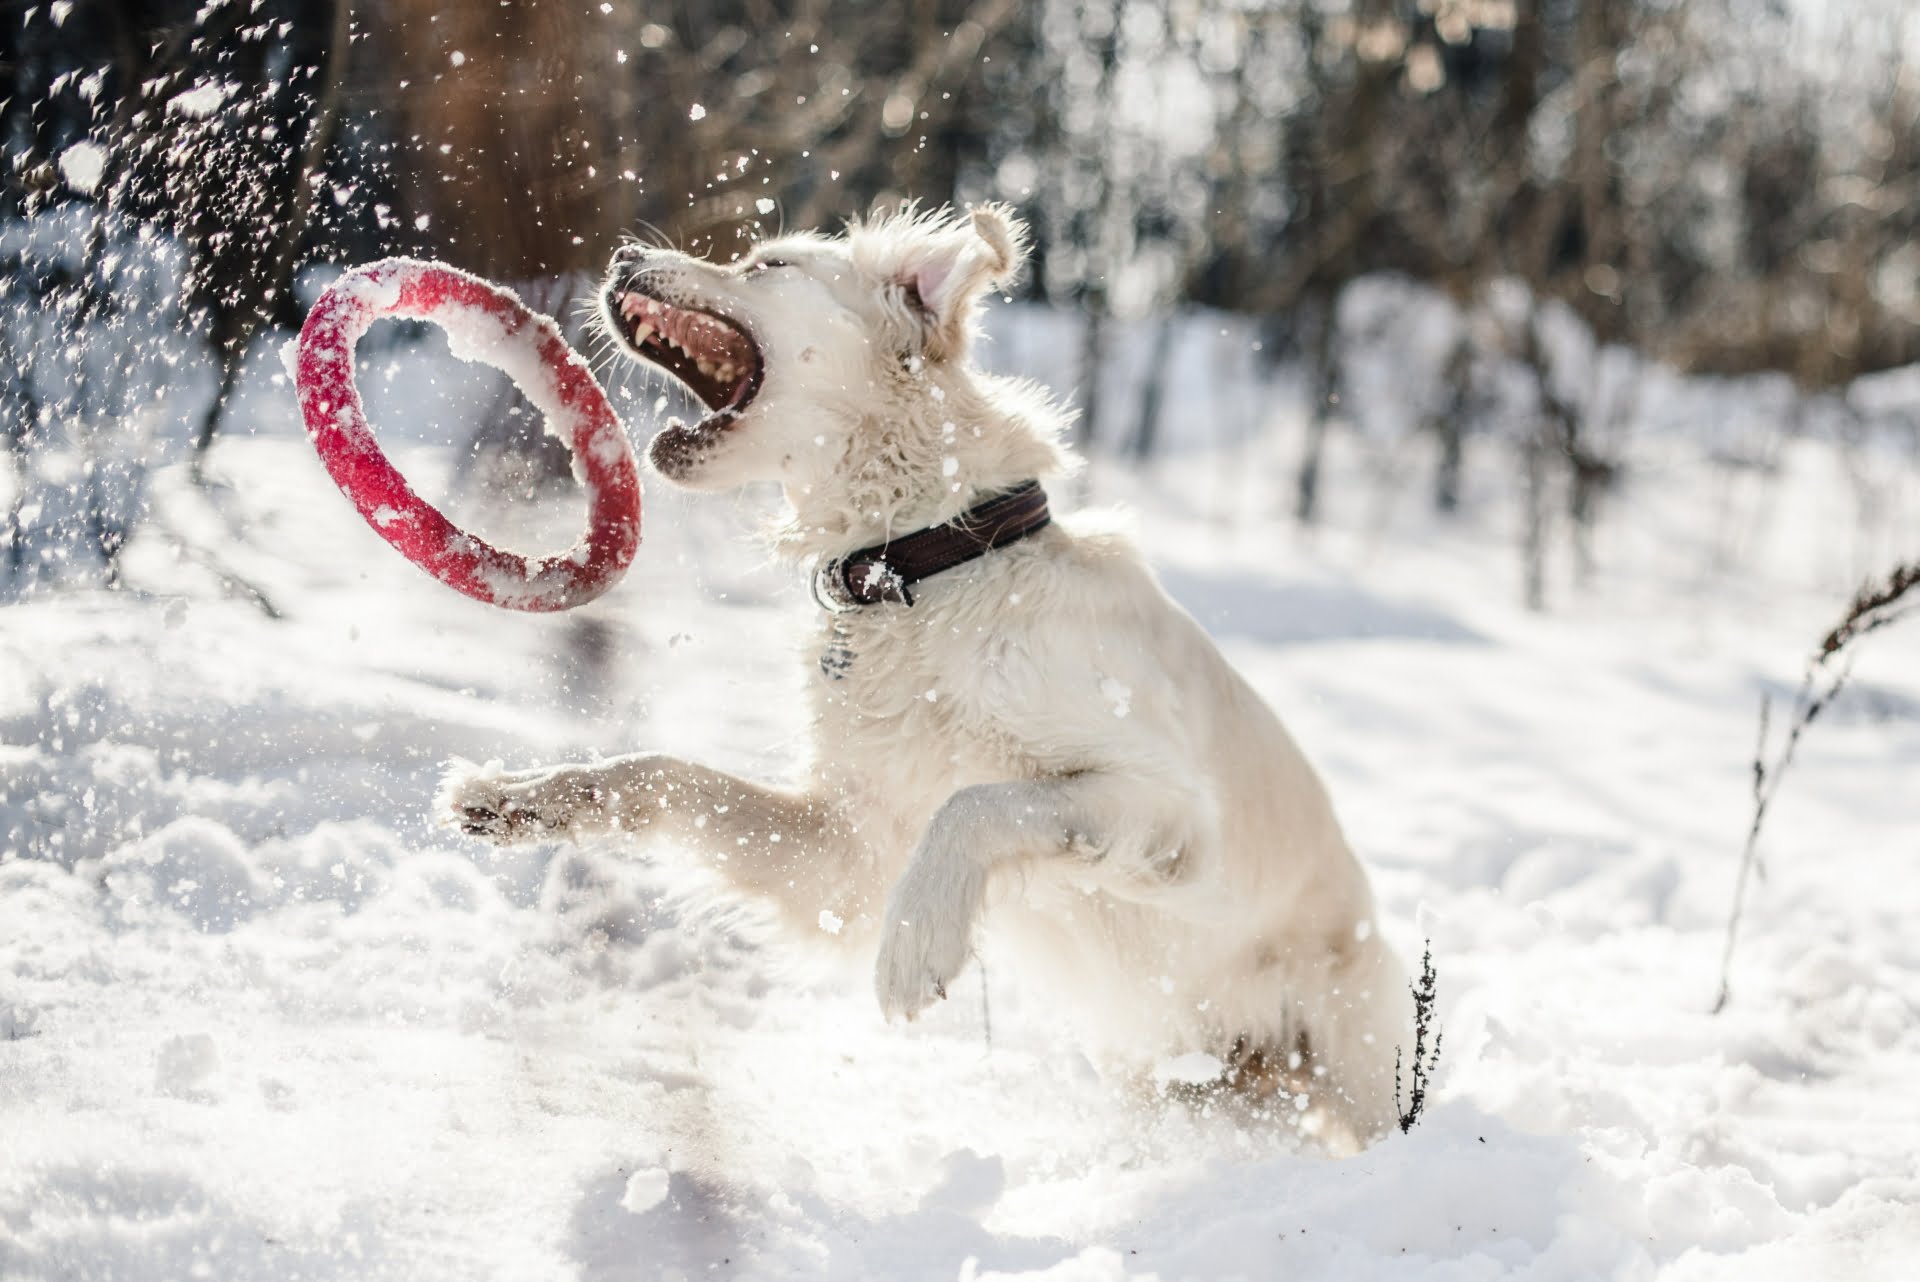 Winter mit Hund: hilfreiche Tipps für die kälteste Zeit des Jahres